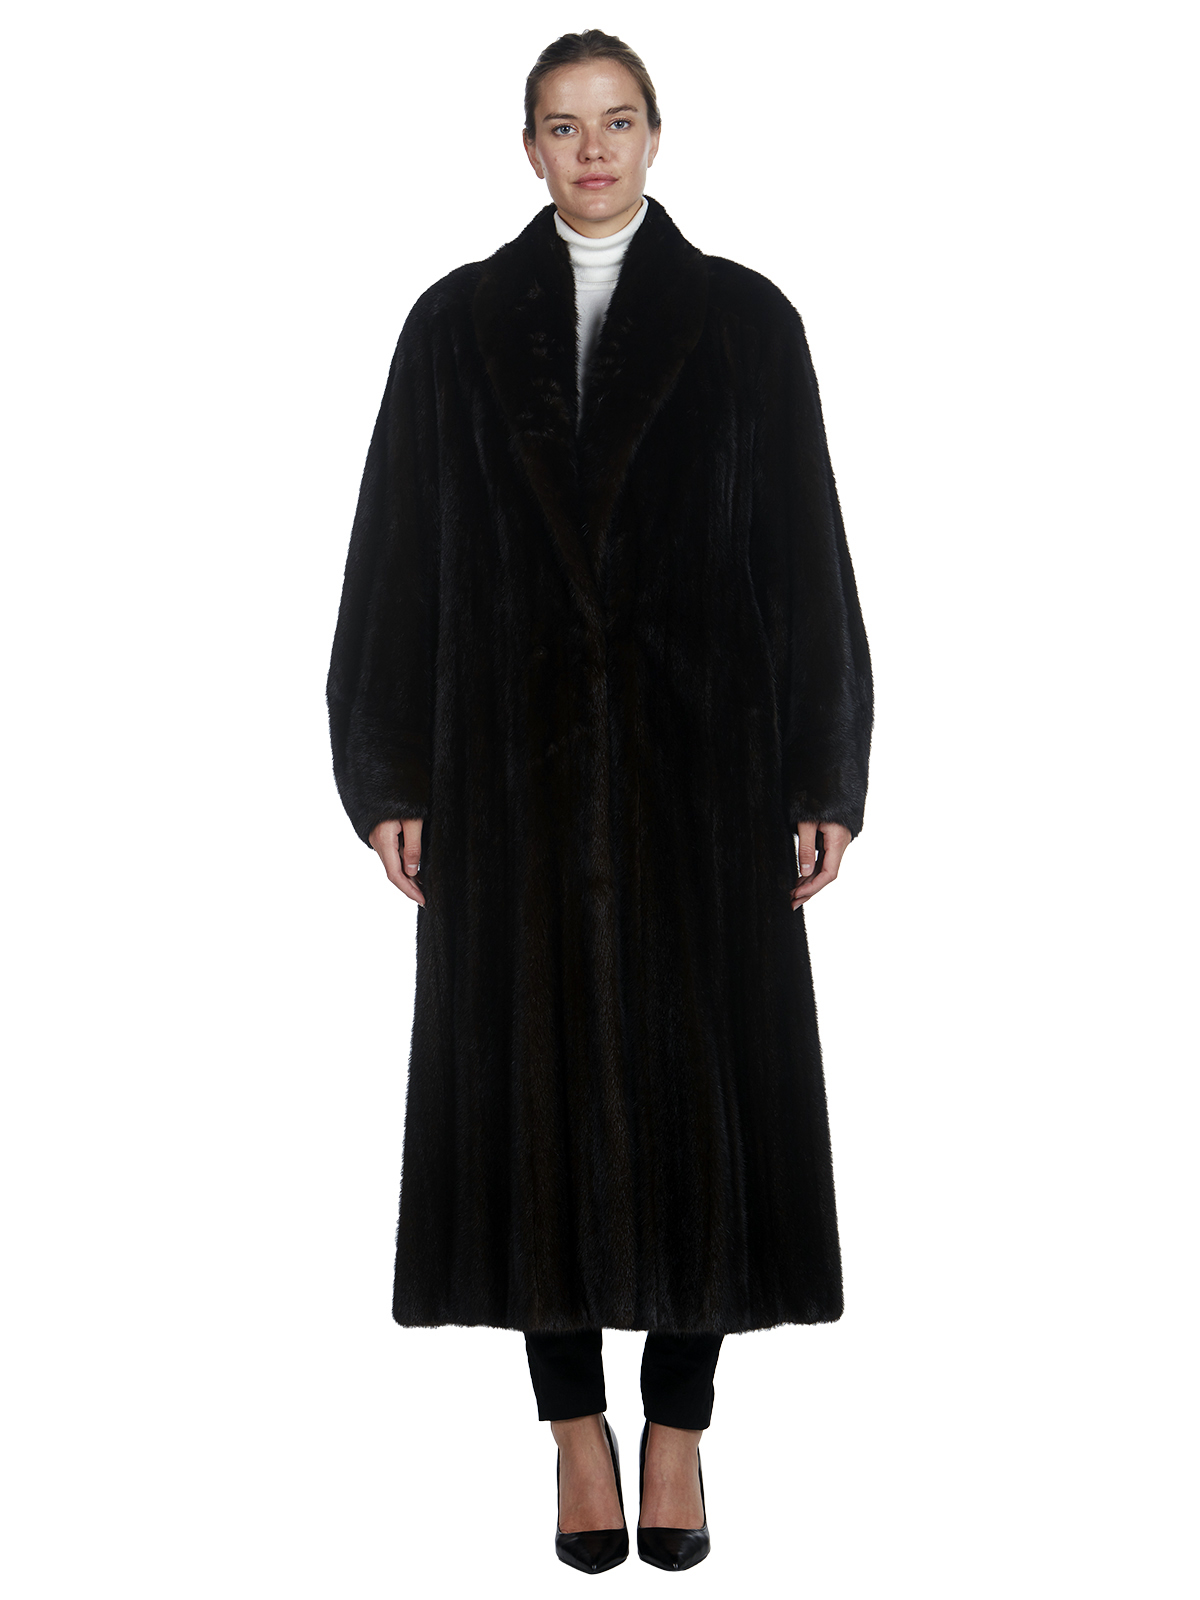 Bifano Full Length Ranch Mink Fur Coat - Women's Fur Coat - XL| Estate Furs